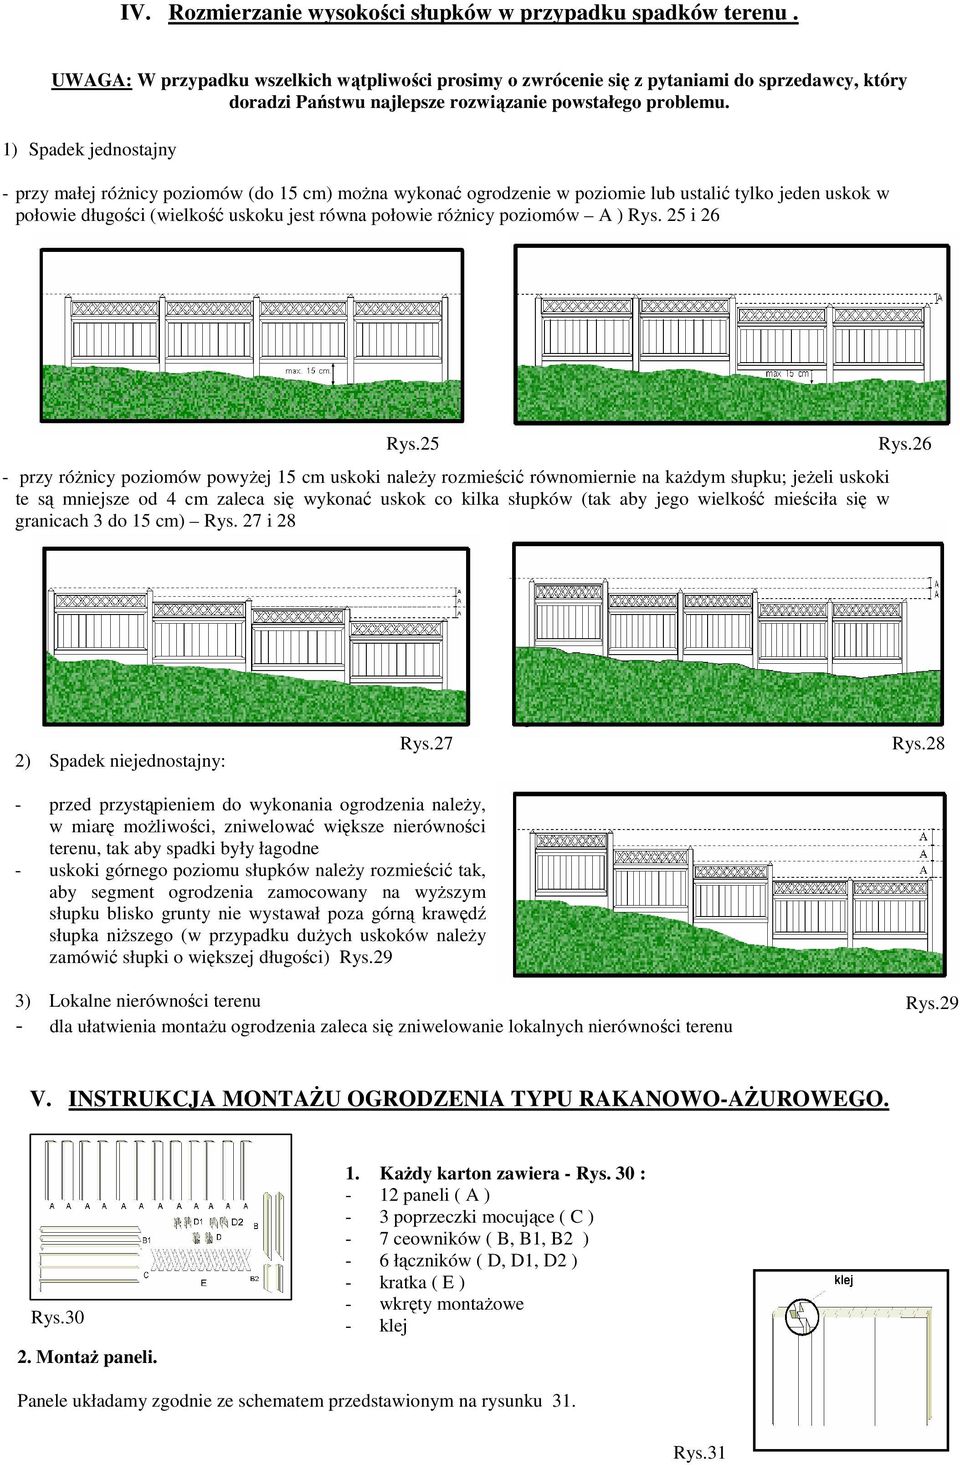 1) Spadek jednostajny - przy małej róŝnicy poziomów (do 15 cm) moŝna wykonać ogrodzenie w poziomie lub ustalić tylko jeden uskok w połowie długości (wielkość uskoku jest równa połowie róŝnicy